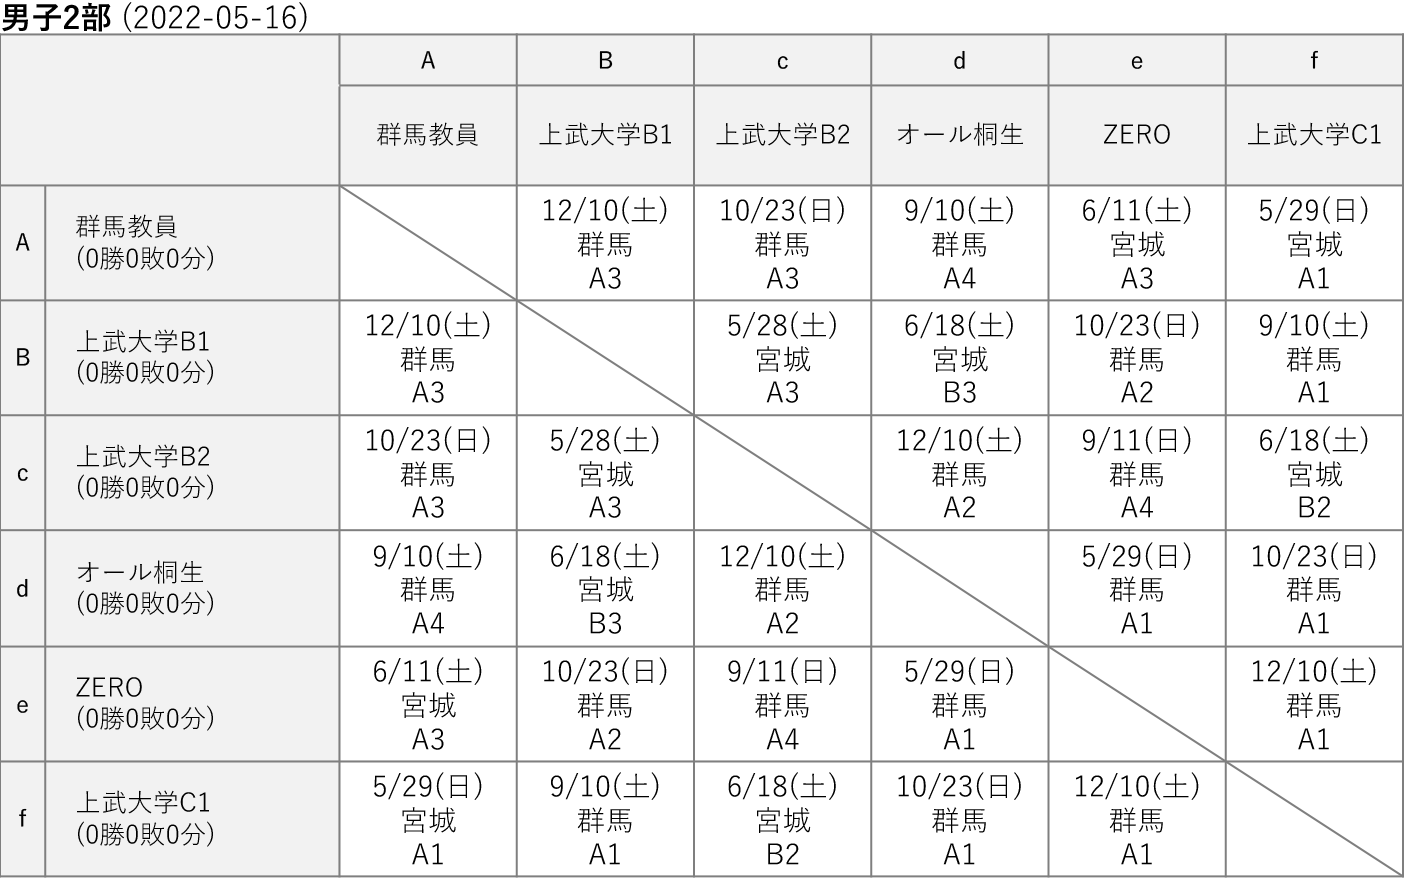 2022社会人リーグ 男子2部 星取り表(2022-05-16)